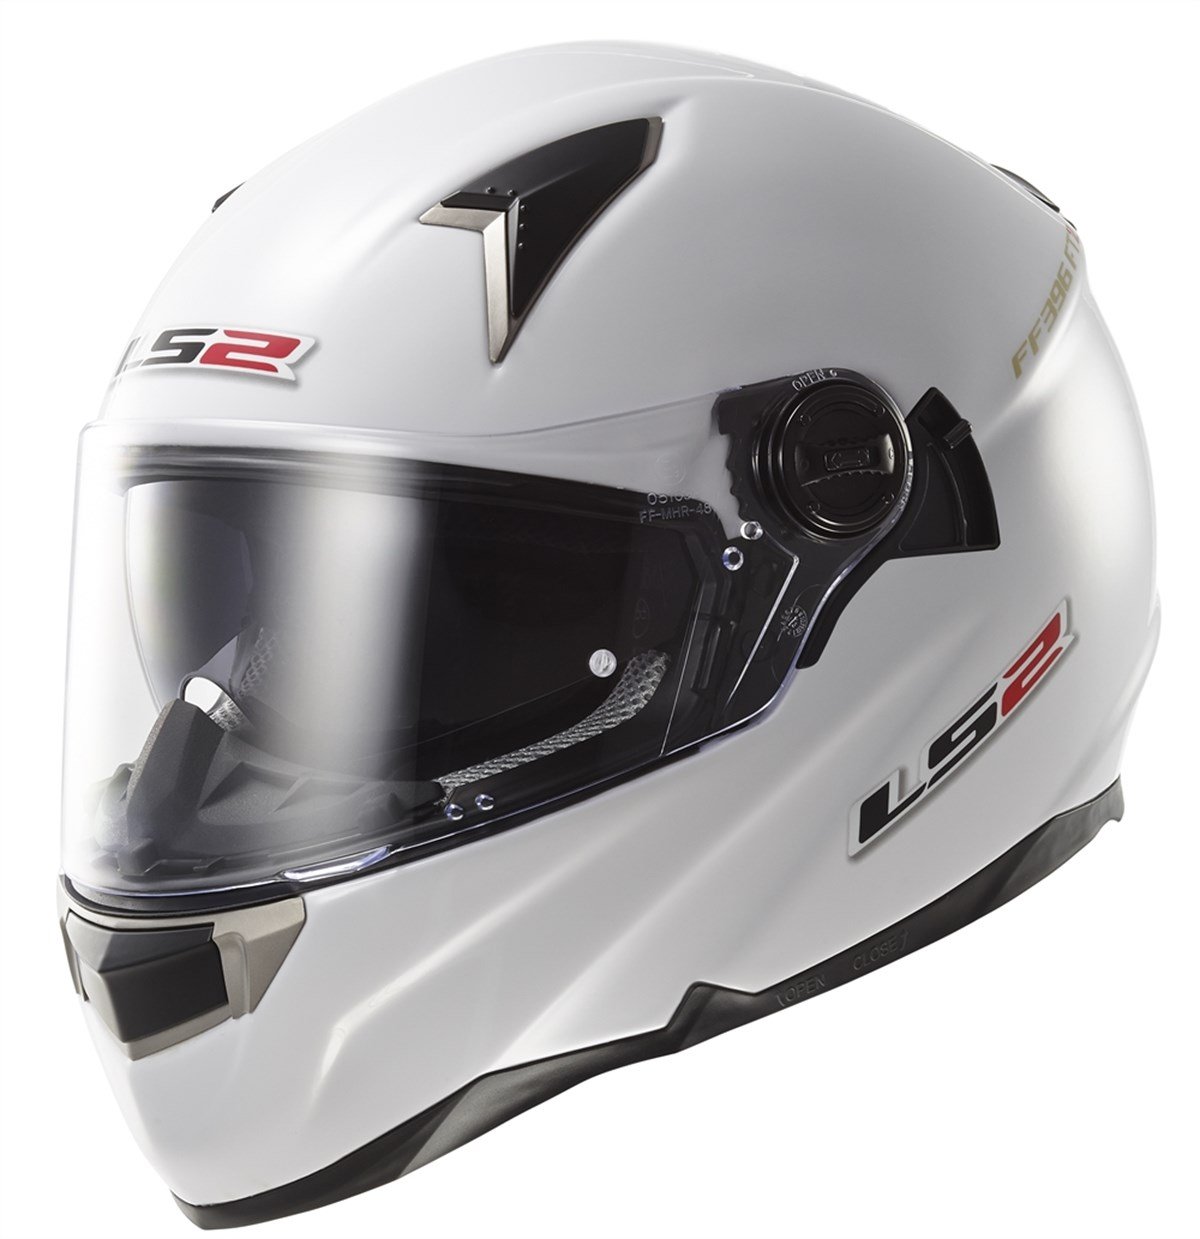 Ls2 FF396 Full Face Motosiklet Kaski | Hızlı Teslimat ve Uygun Fiyat  Seçenekleri ile Vipmoto'da!